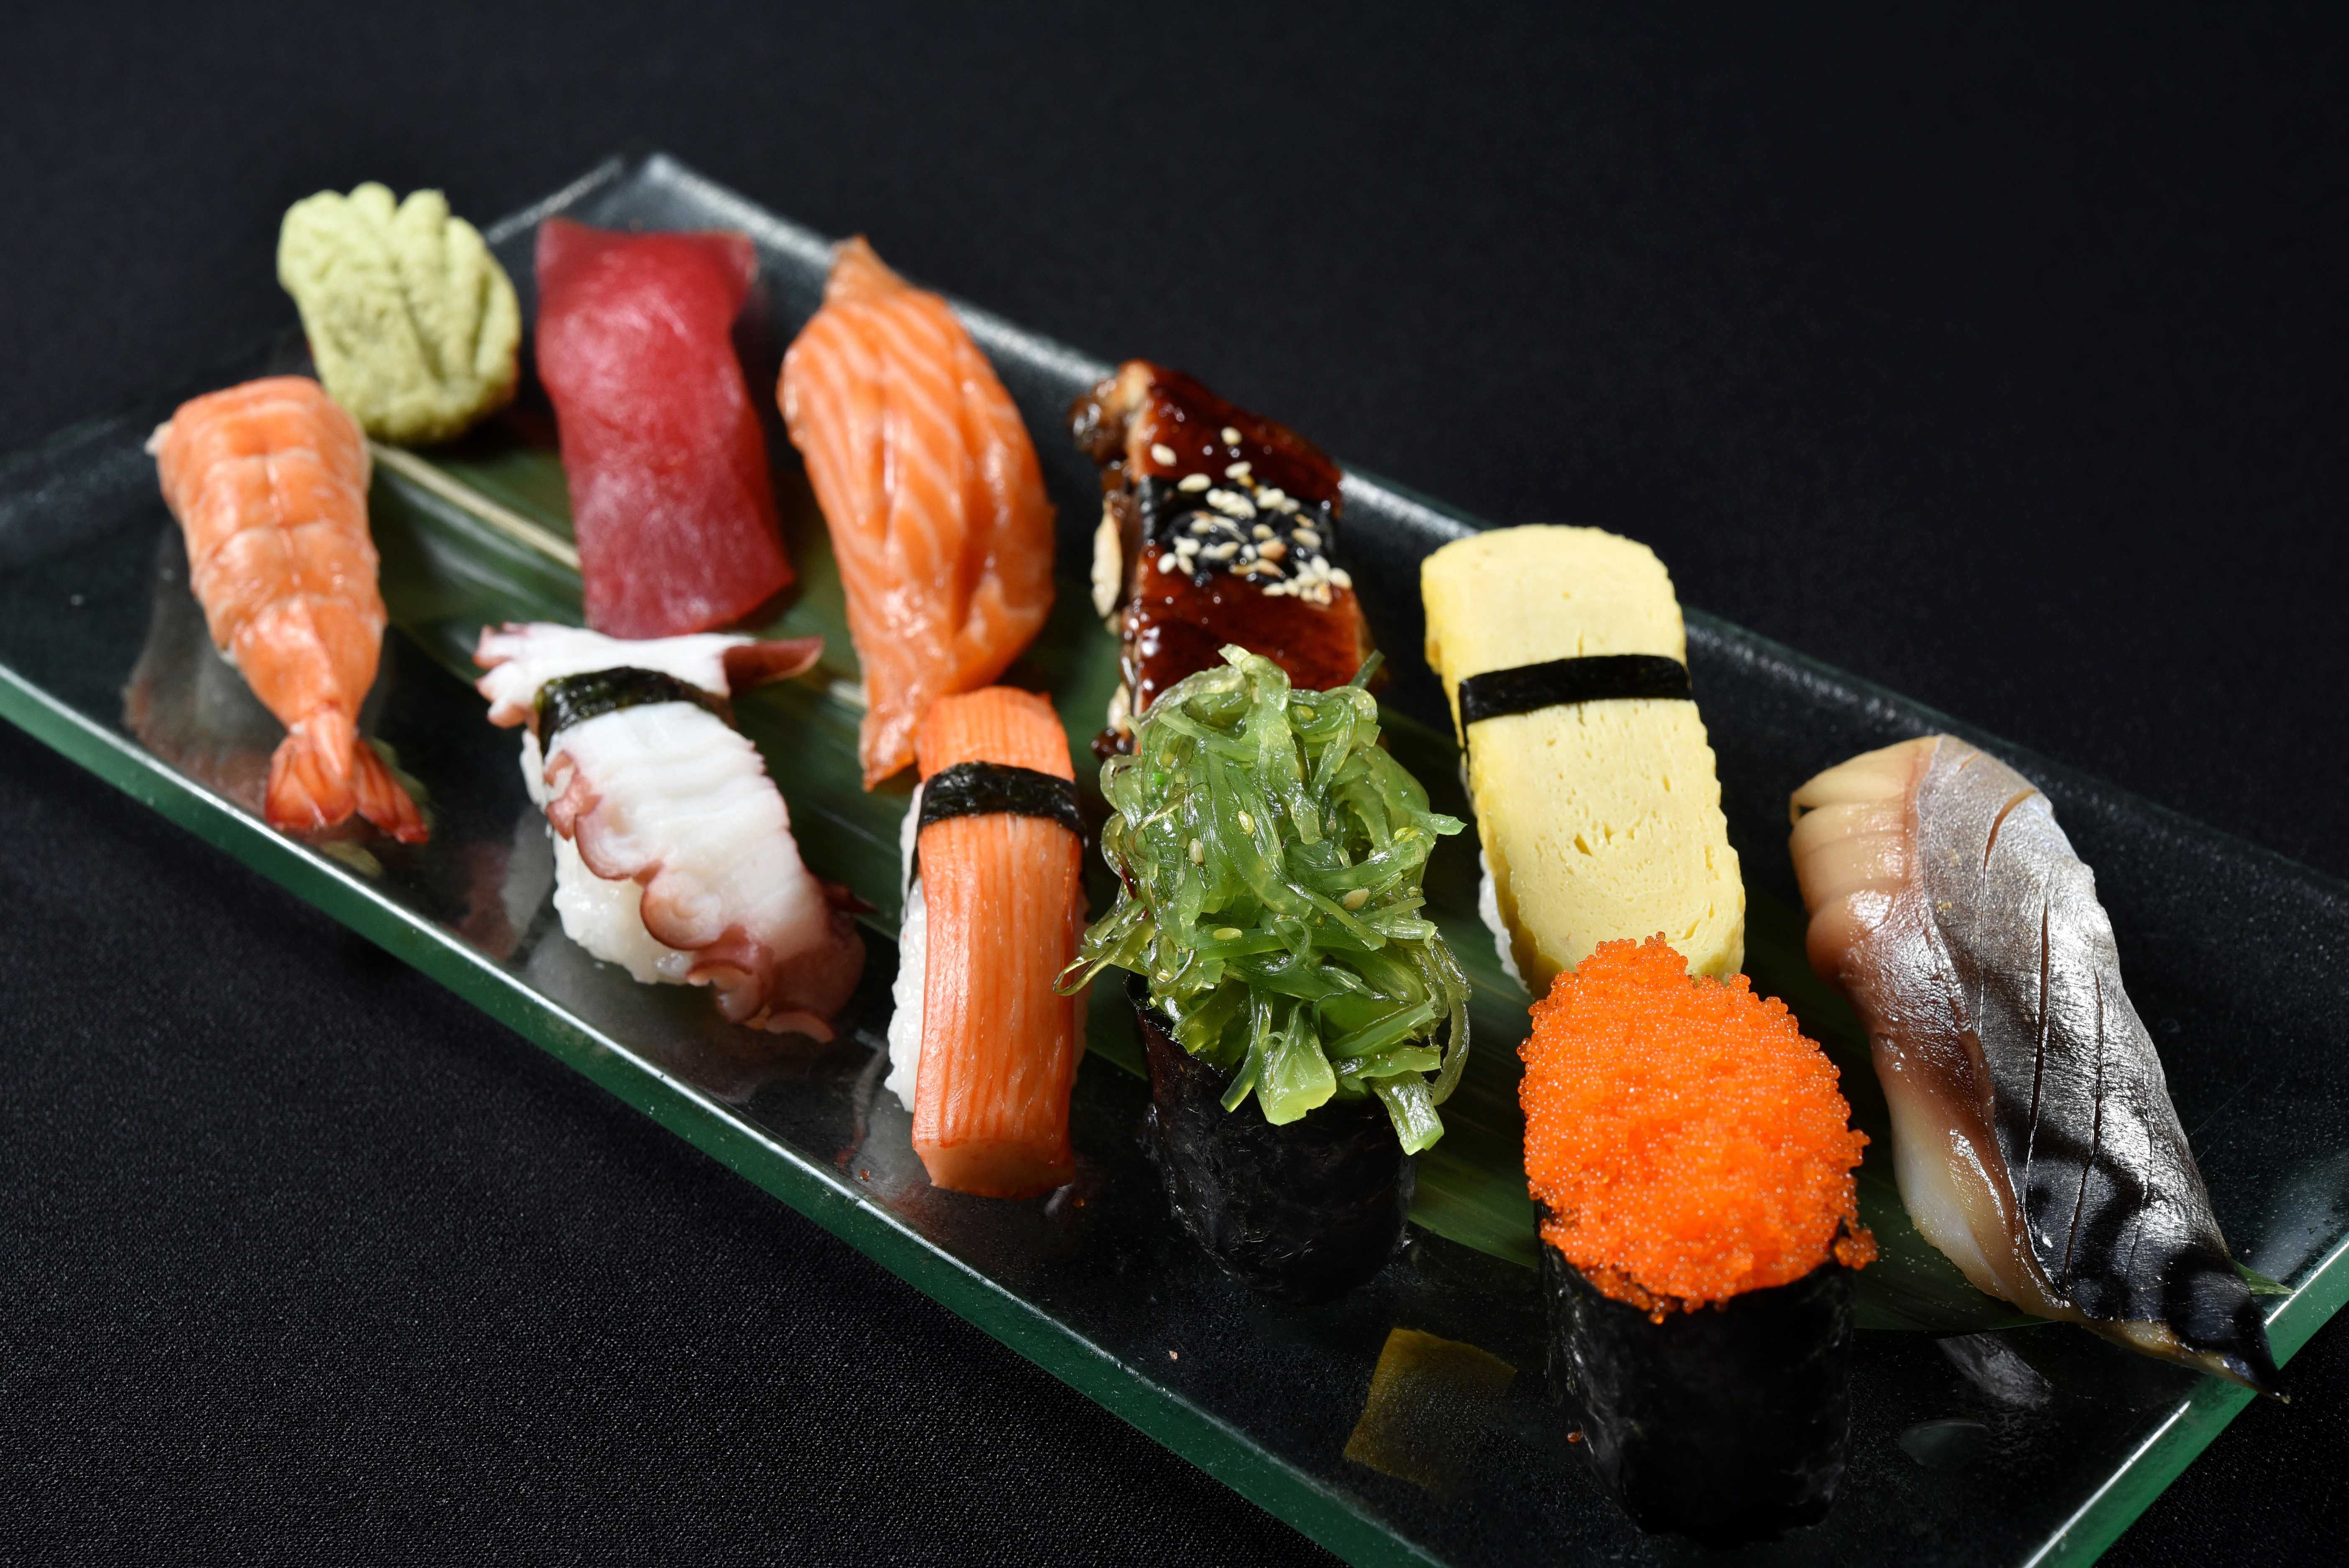 еда суши роллы японская кухня япония food sushi rolls Japanese kitchen Japan скачать